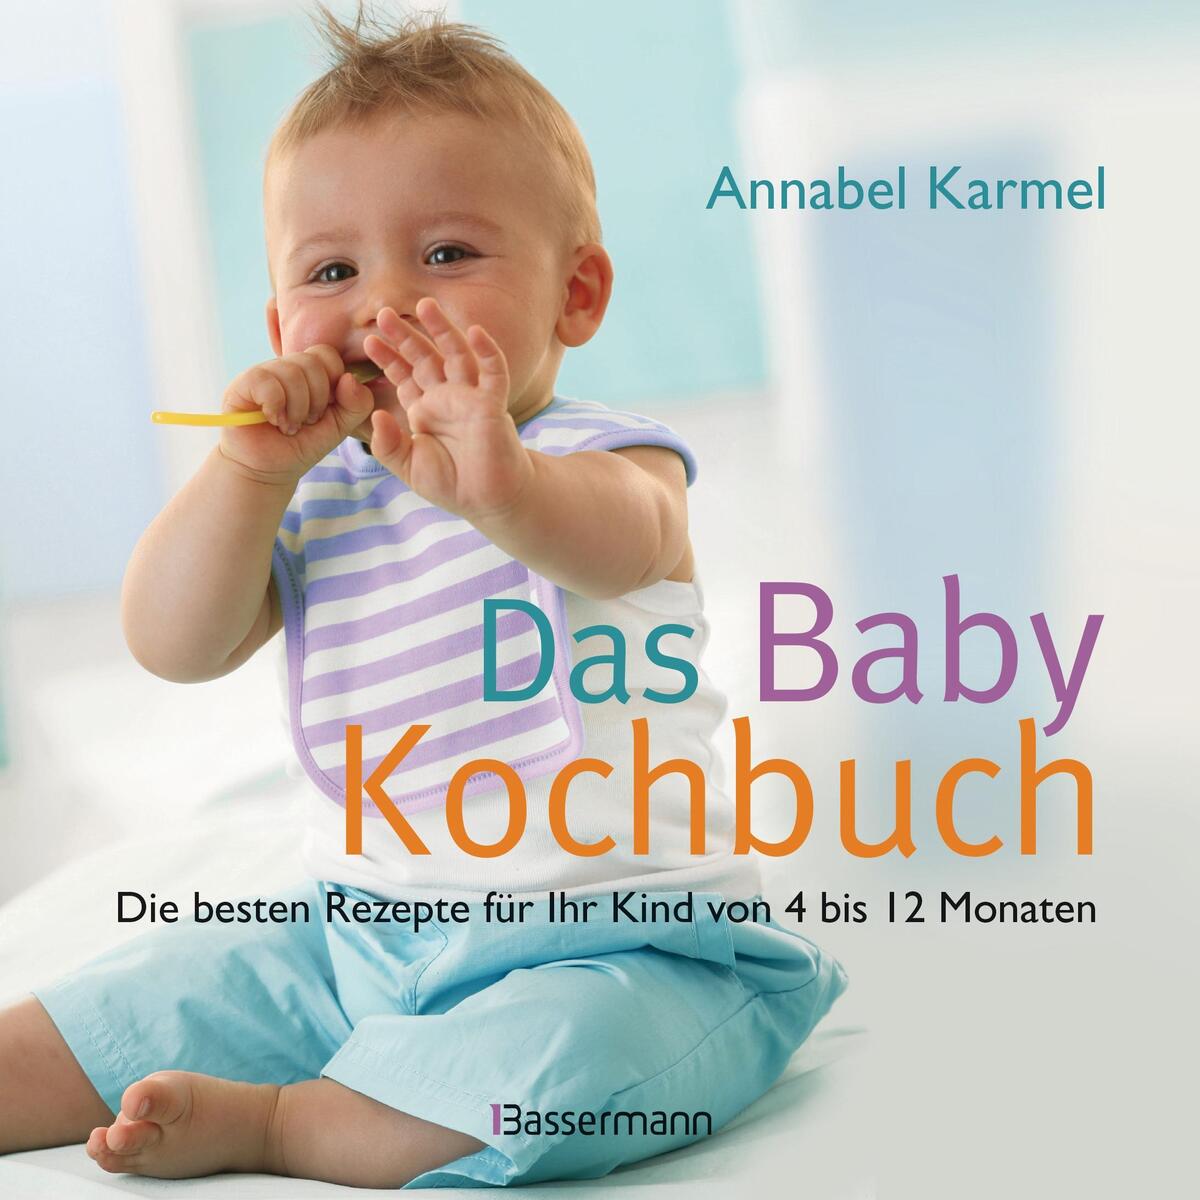 Das Babykochbuch von Bassermann, Edition